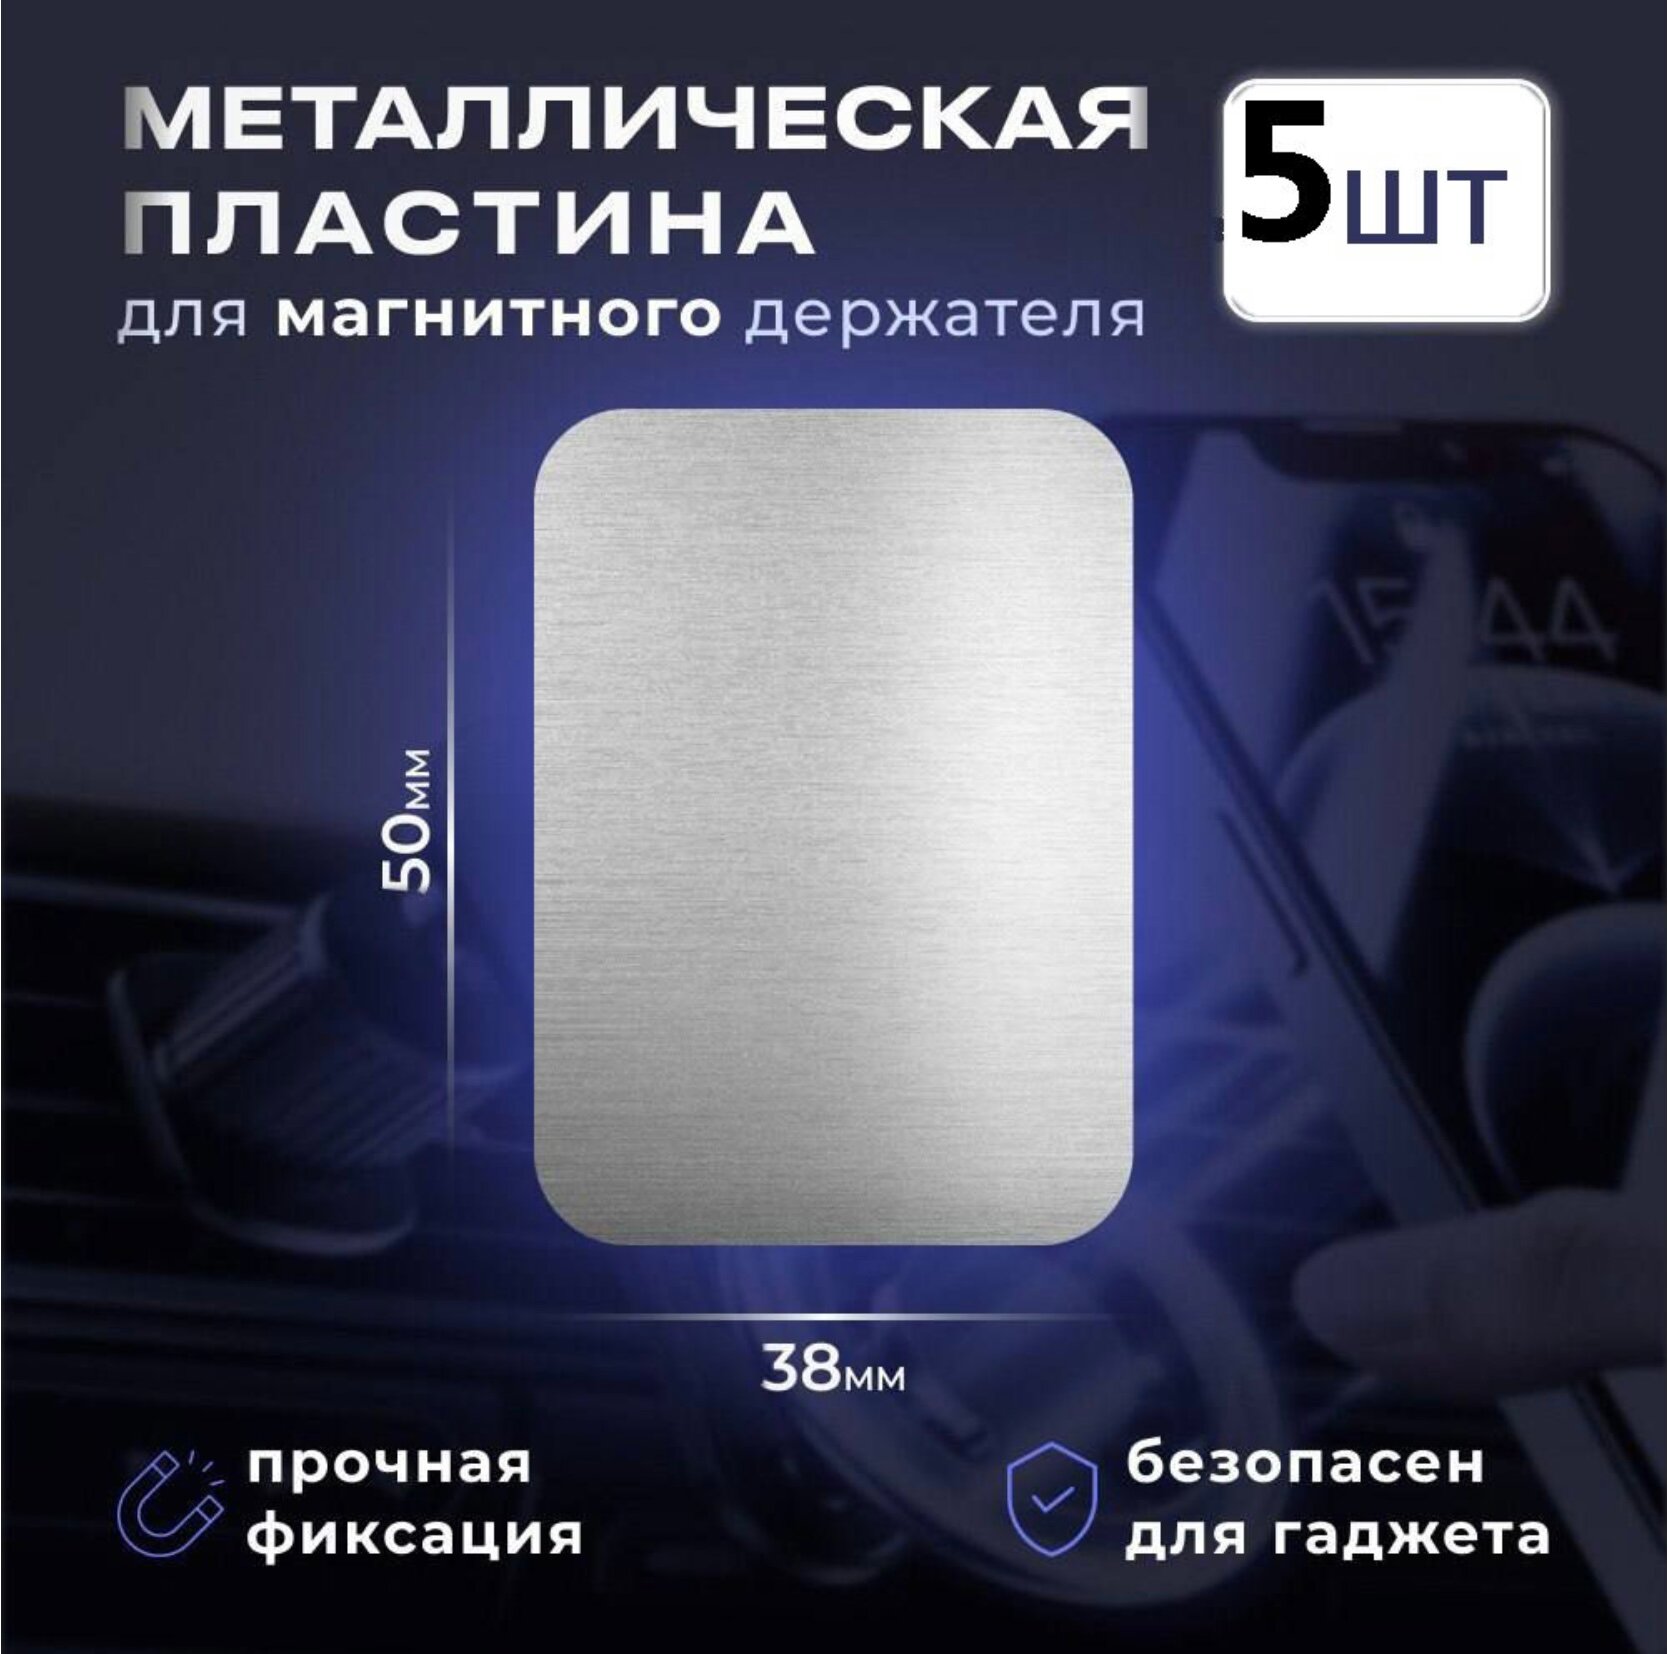 Металлическая пластина для магнитного автомобильного держателя 5шт комплект серебристый/серый